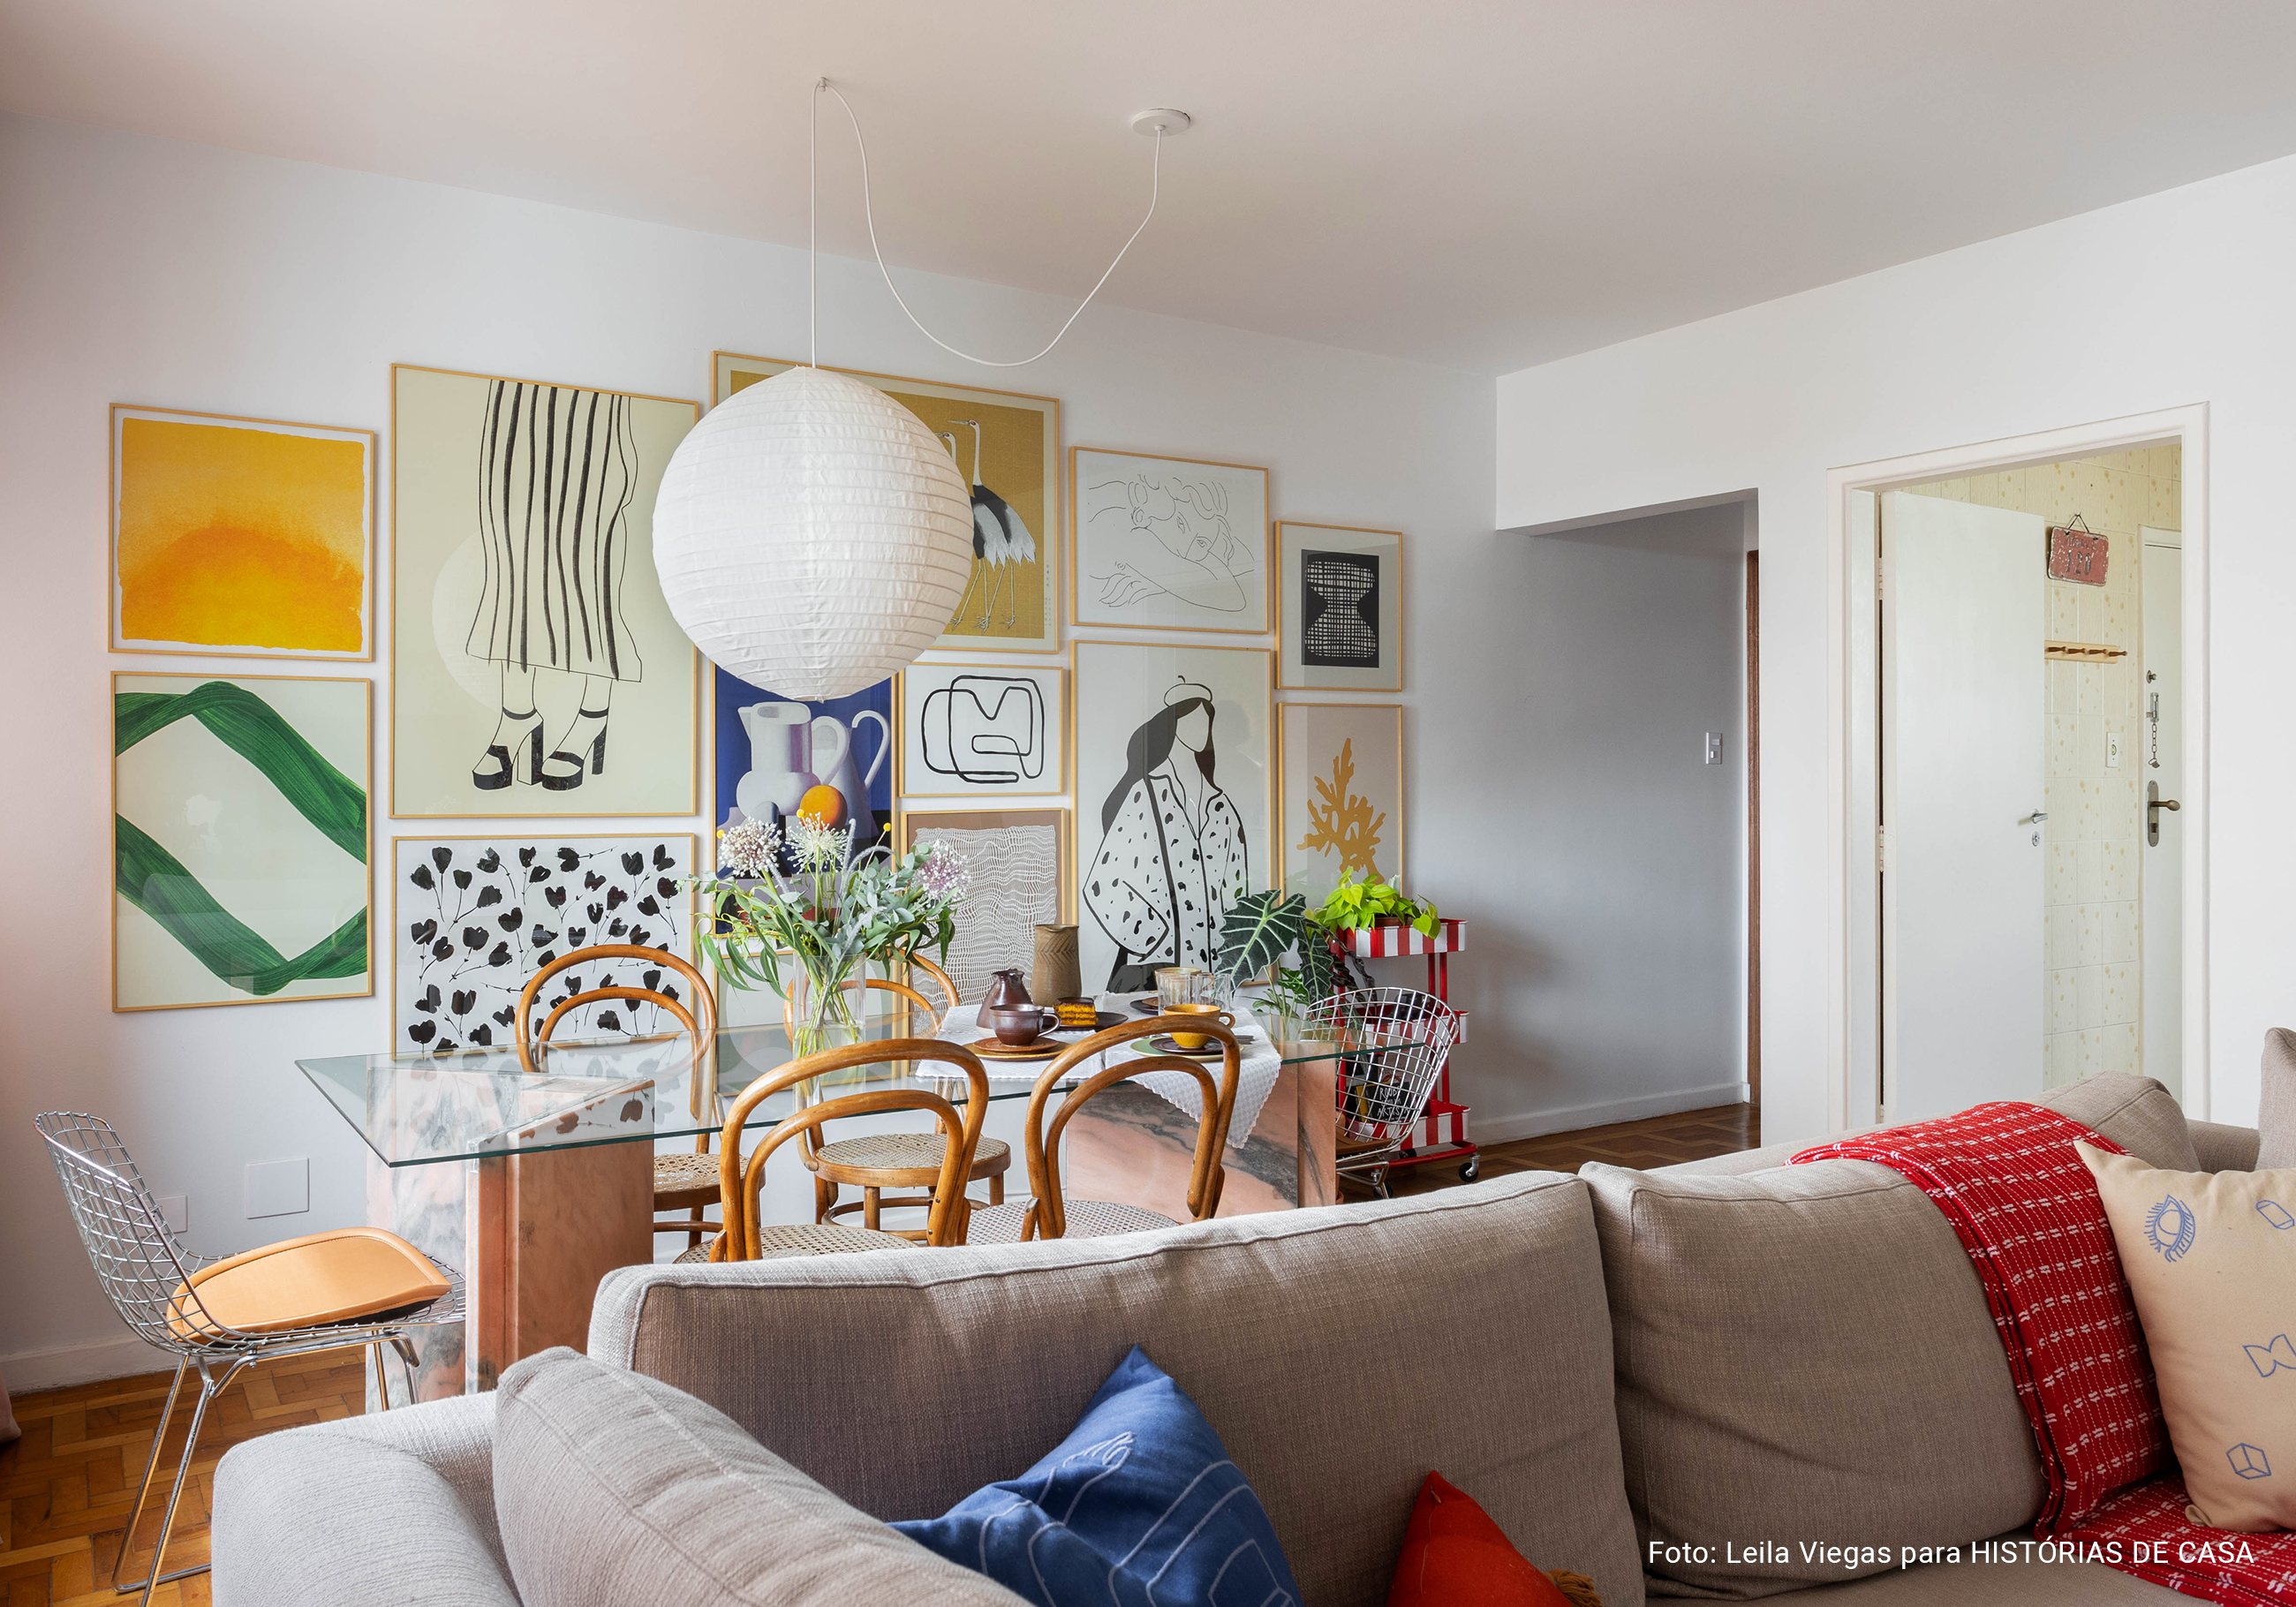 Apartamento com parede de quadros da Boemi, piso de tacos e decoração com móveis garimpados.